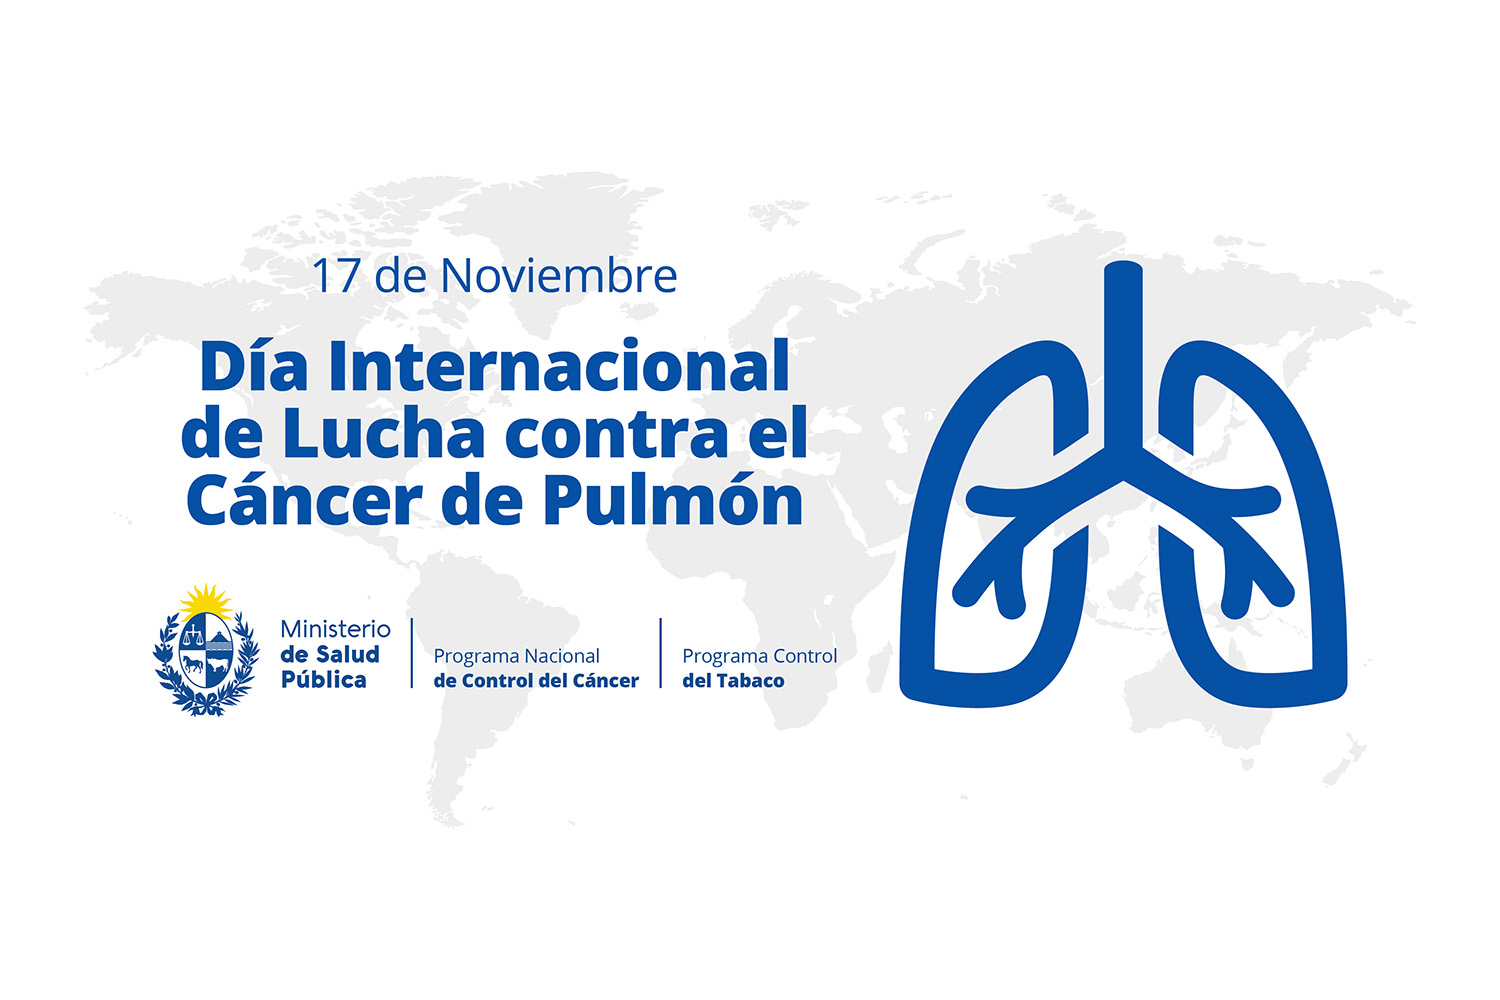 Imagen día mundial de lucha contra el cáncer de pulmón 